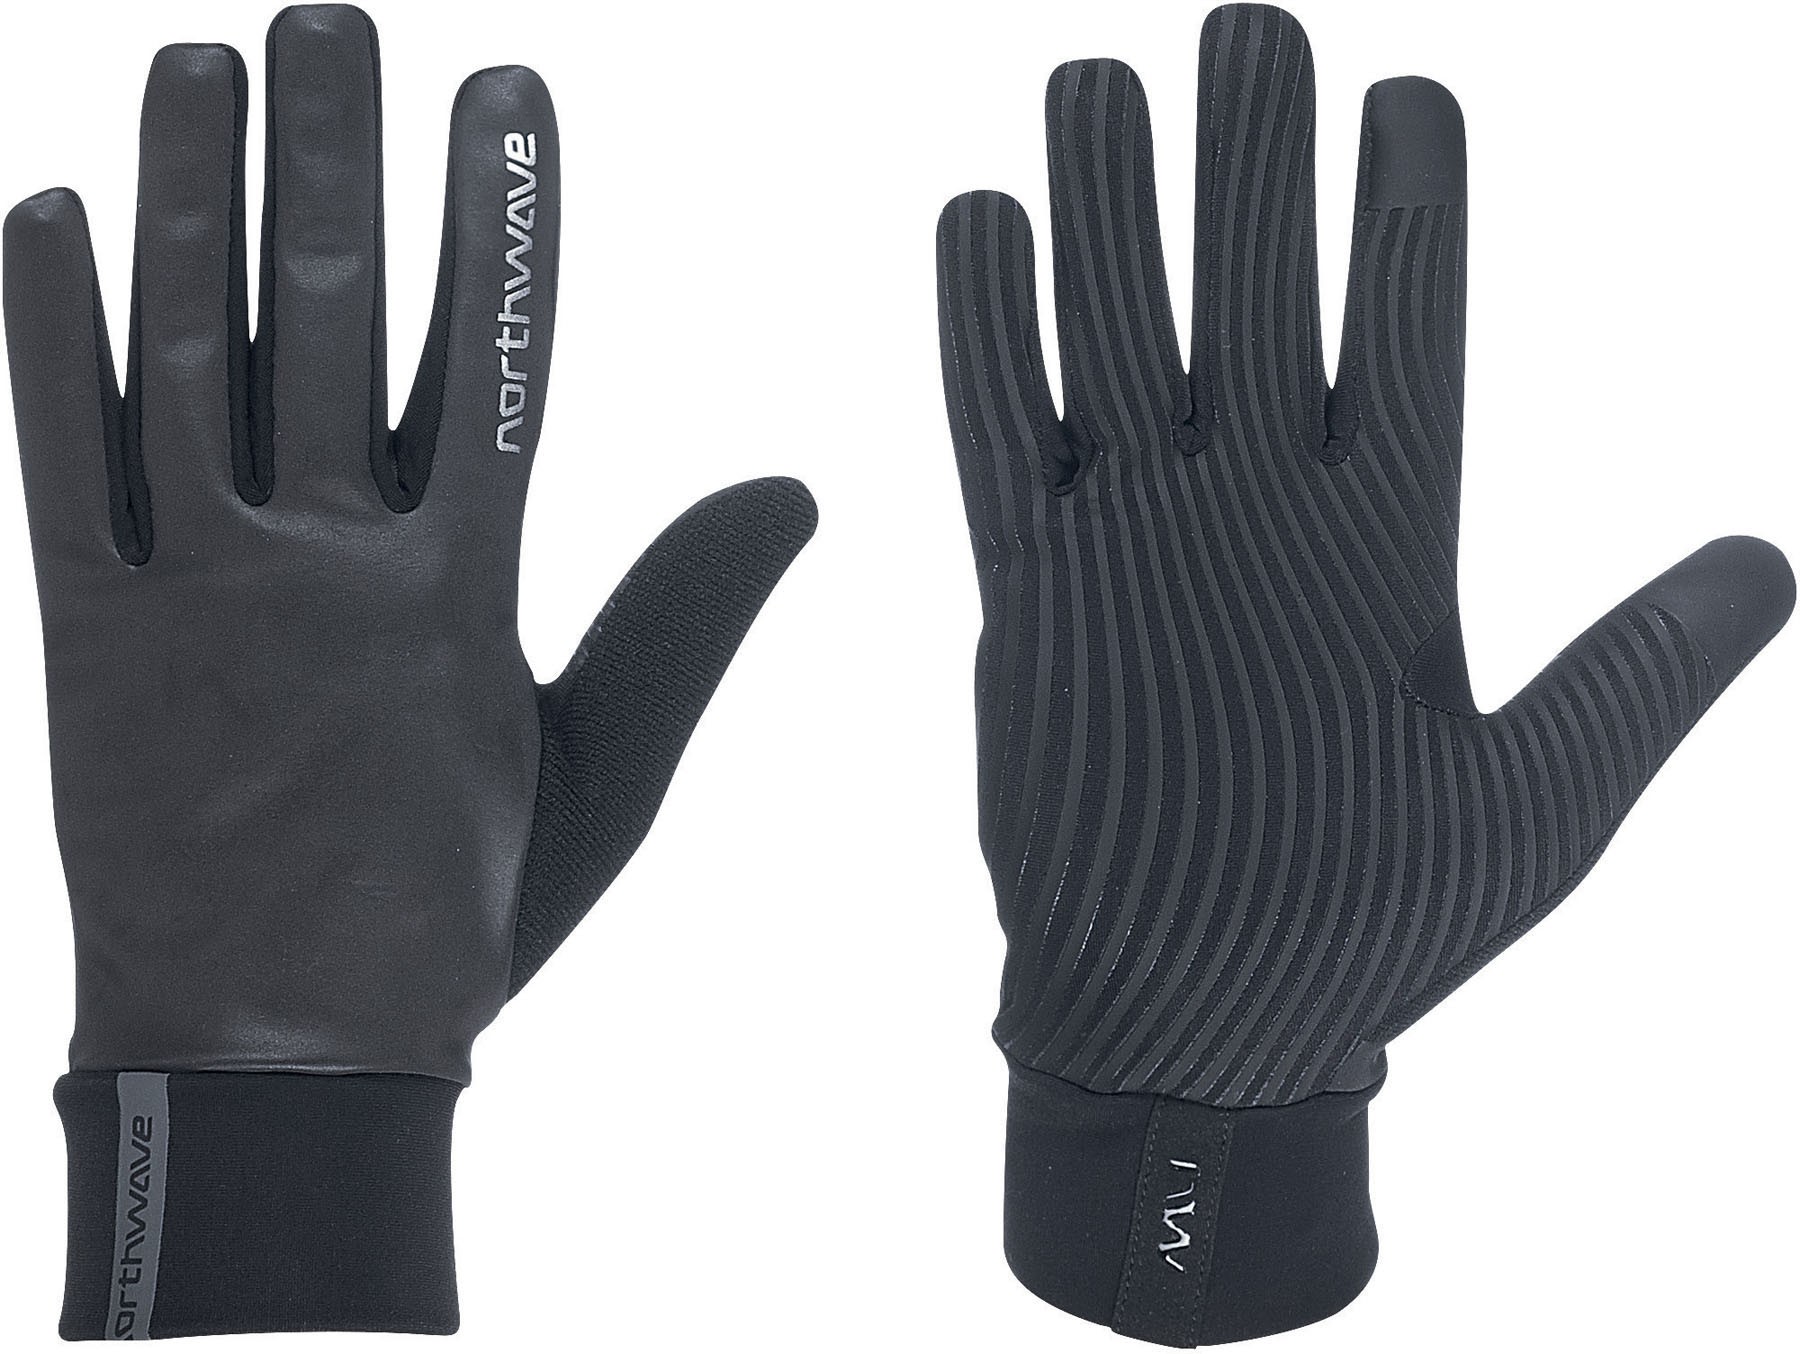 Reflex Gloves — Full Finger